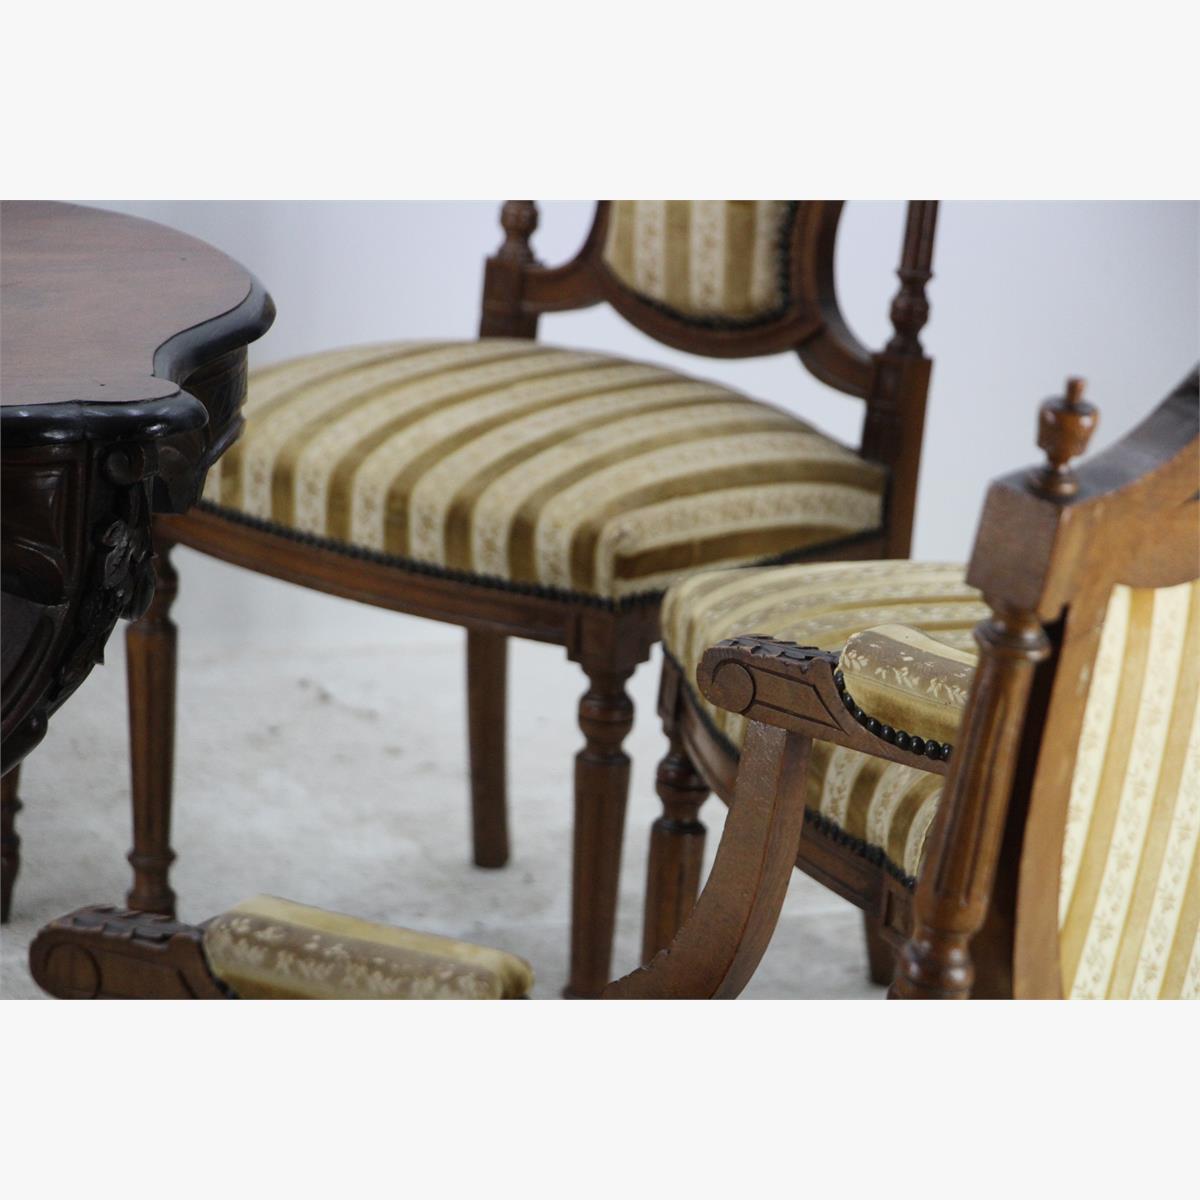 Afbeeldingen van antieke zithoek een zitbank twee armstoelen en vier gewone stoelen 